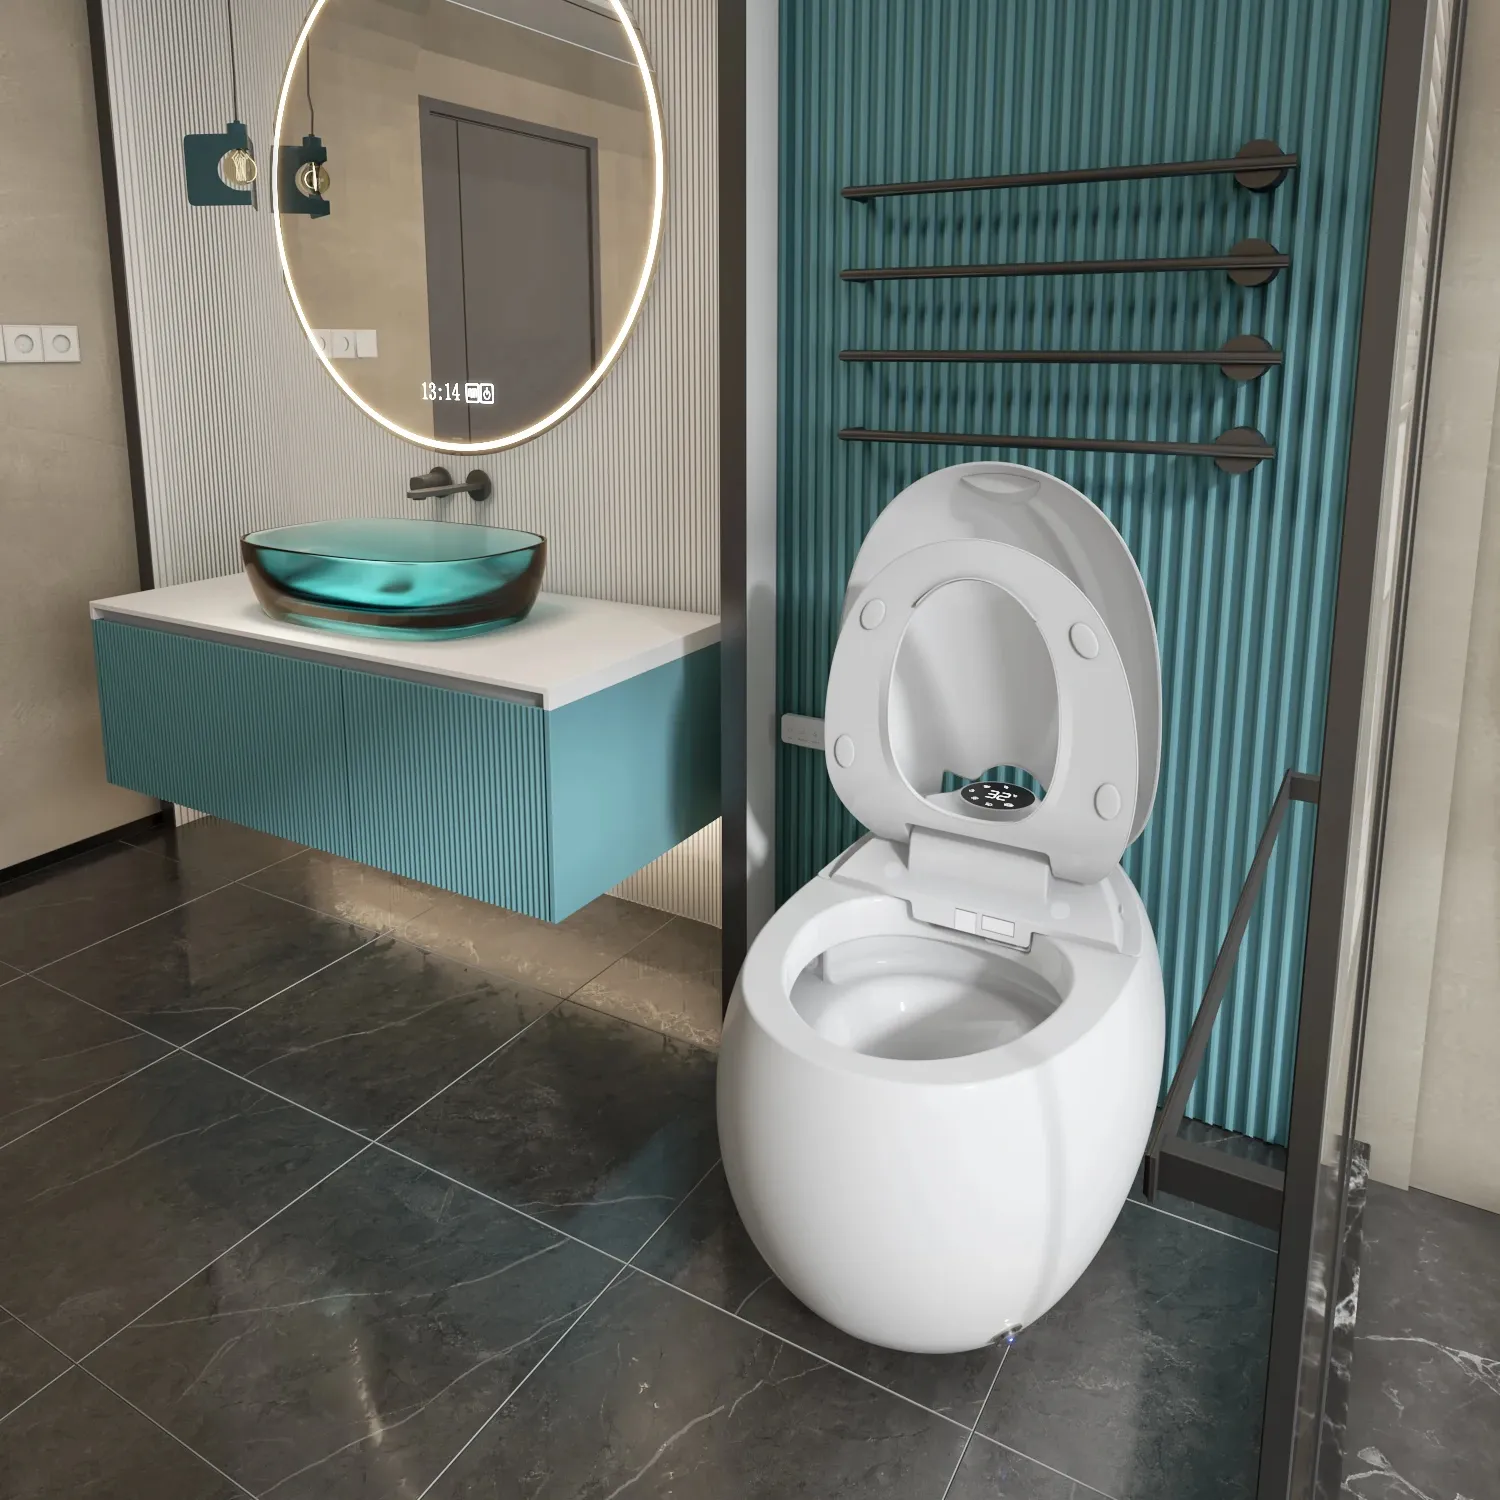 Toilet pintar keramik otomatis, toilet pintar Modern kelas atas untuk kamar mandi